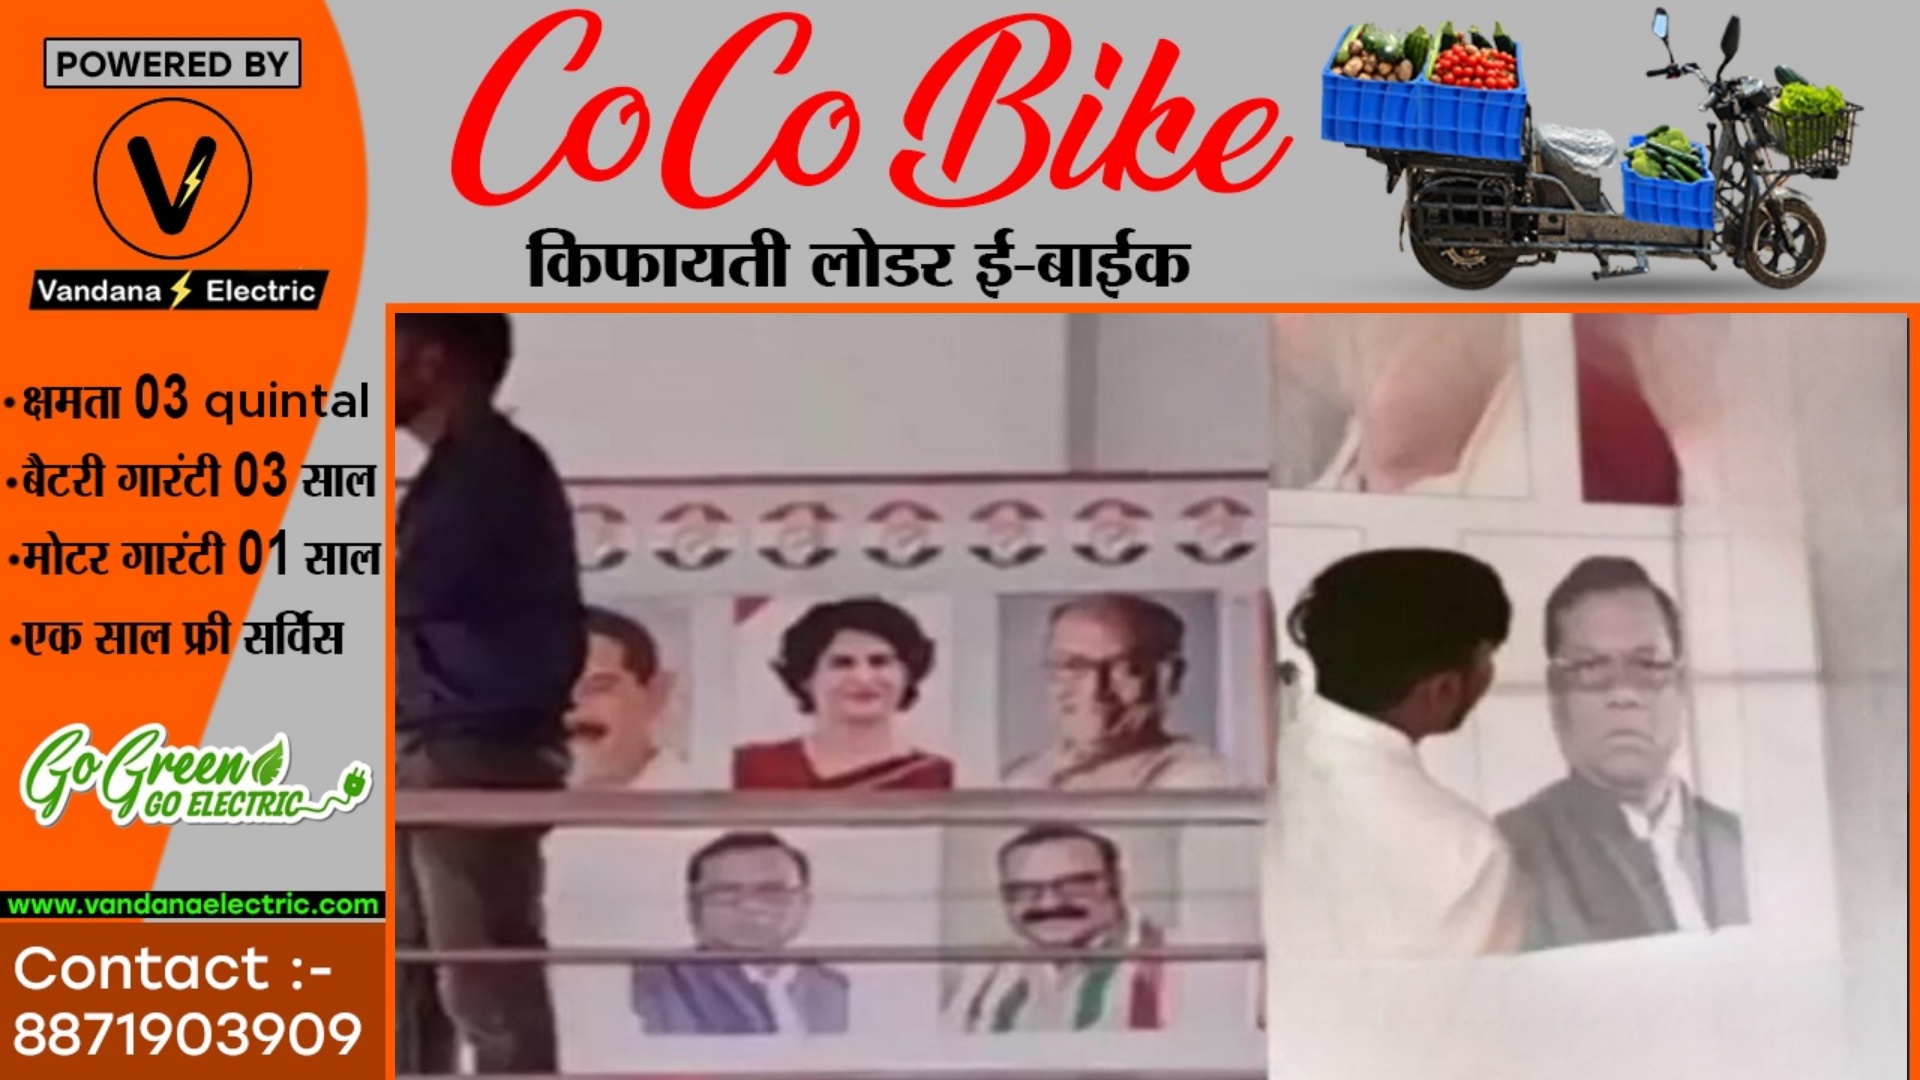 राहुल गांधी के मंच पर BJP प्रत्याशी एवं केंद्रीय मंत्री की फोटो , फिर से हुई कांग्रेस की फजीहत